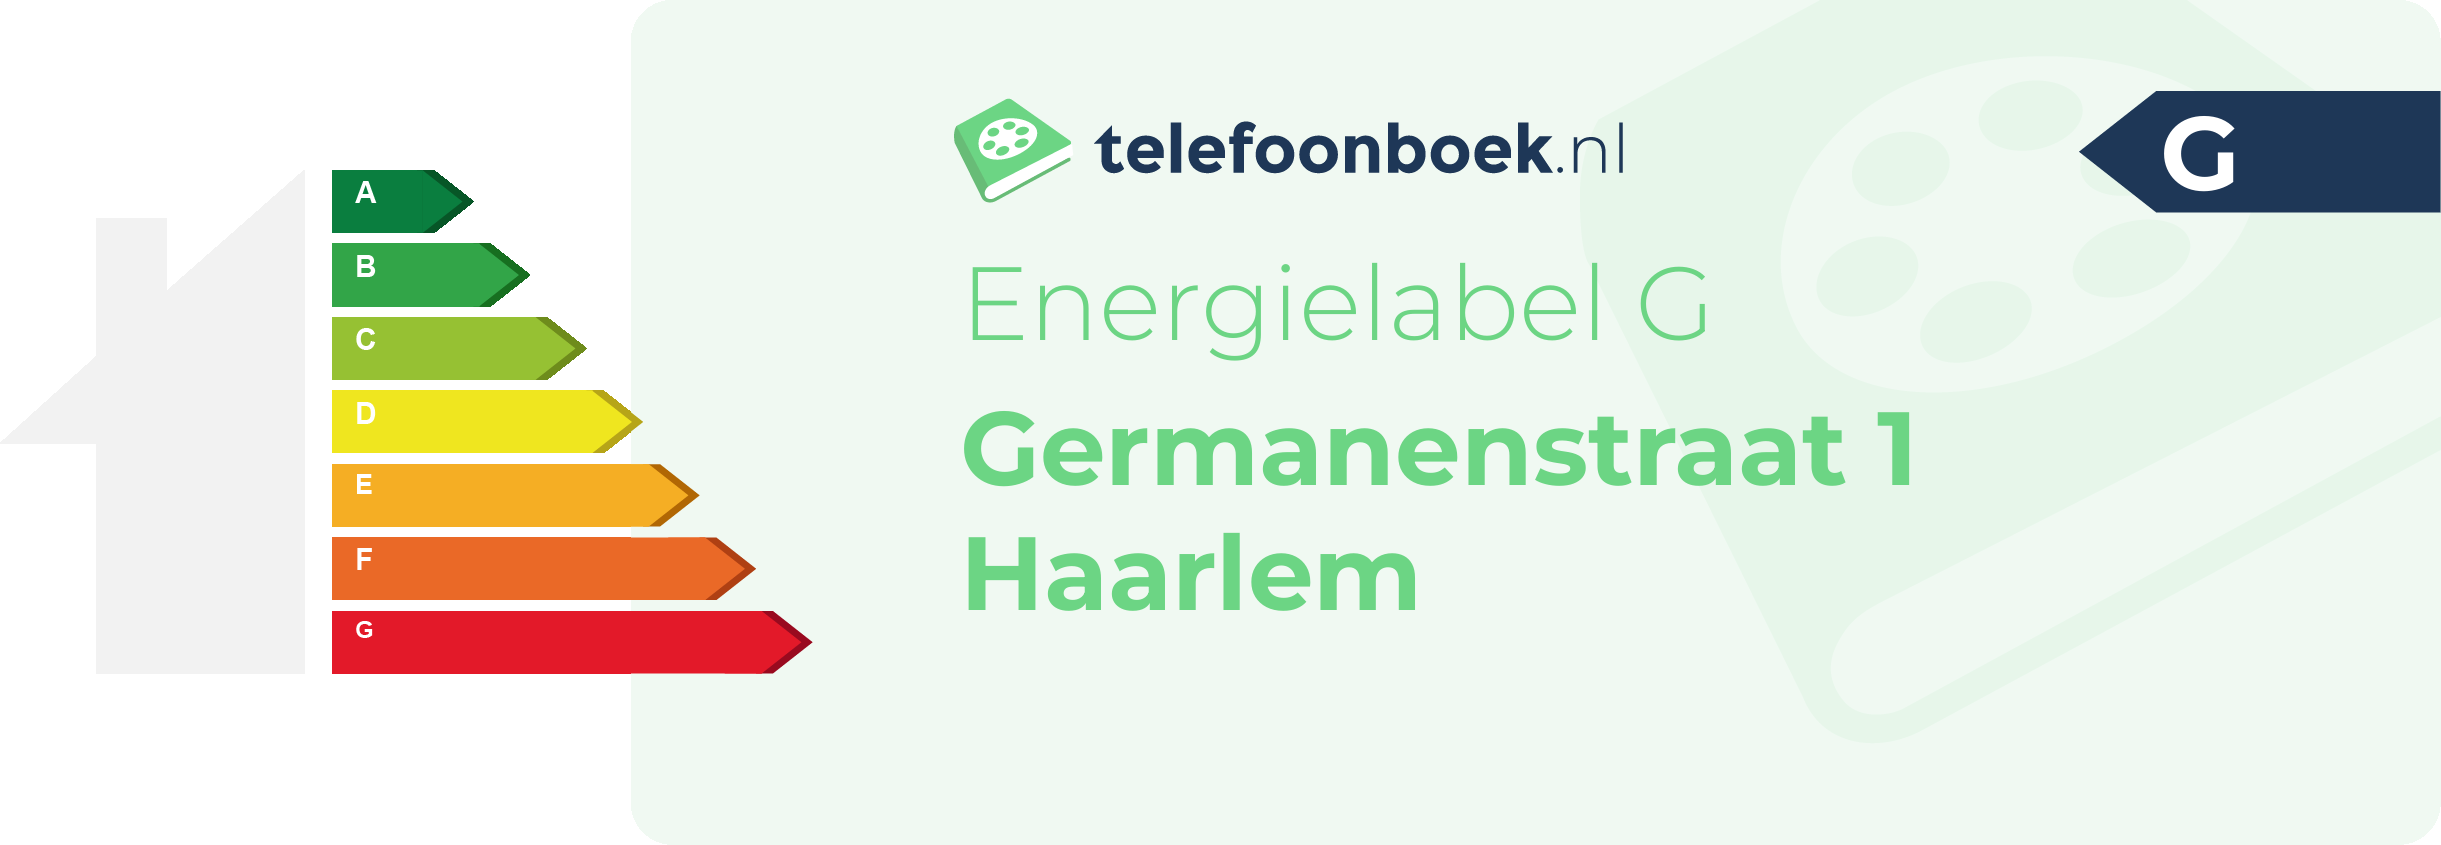 Energielabel Germanenstraat 1 Haarlem